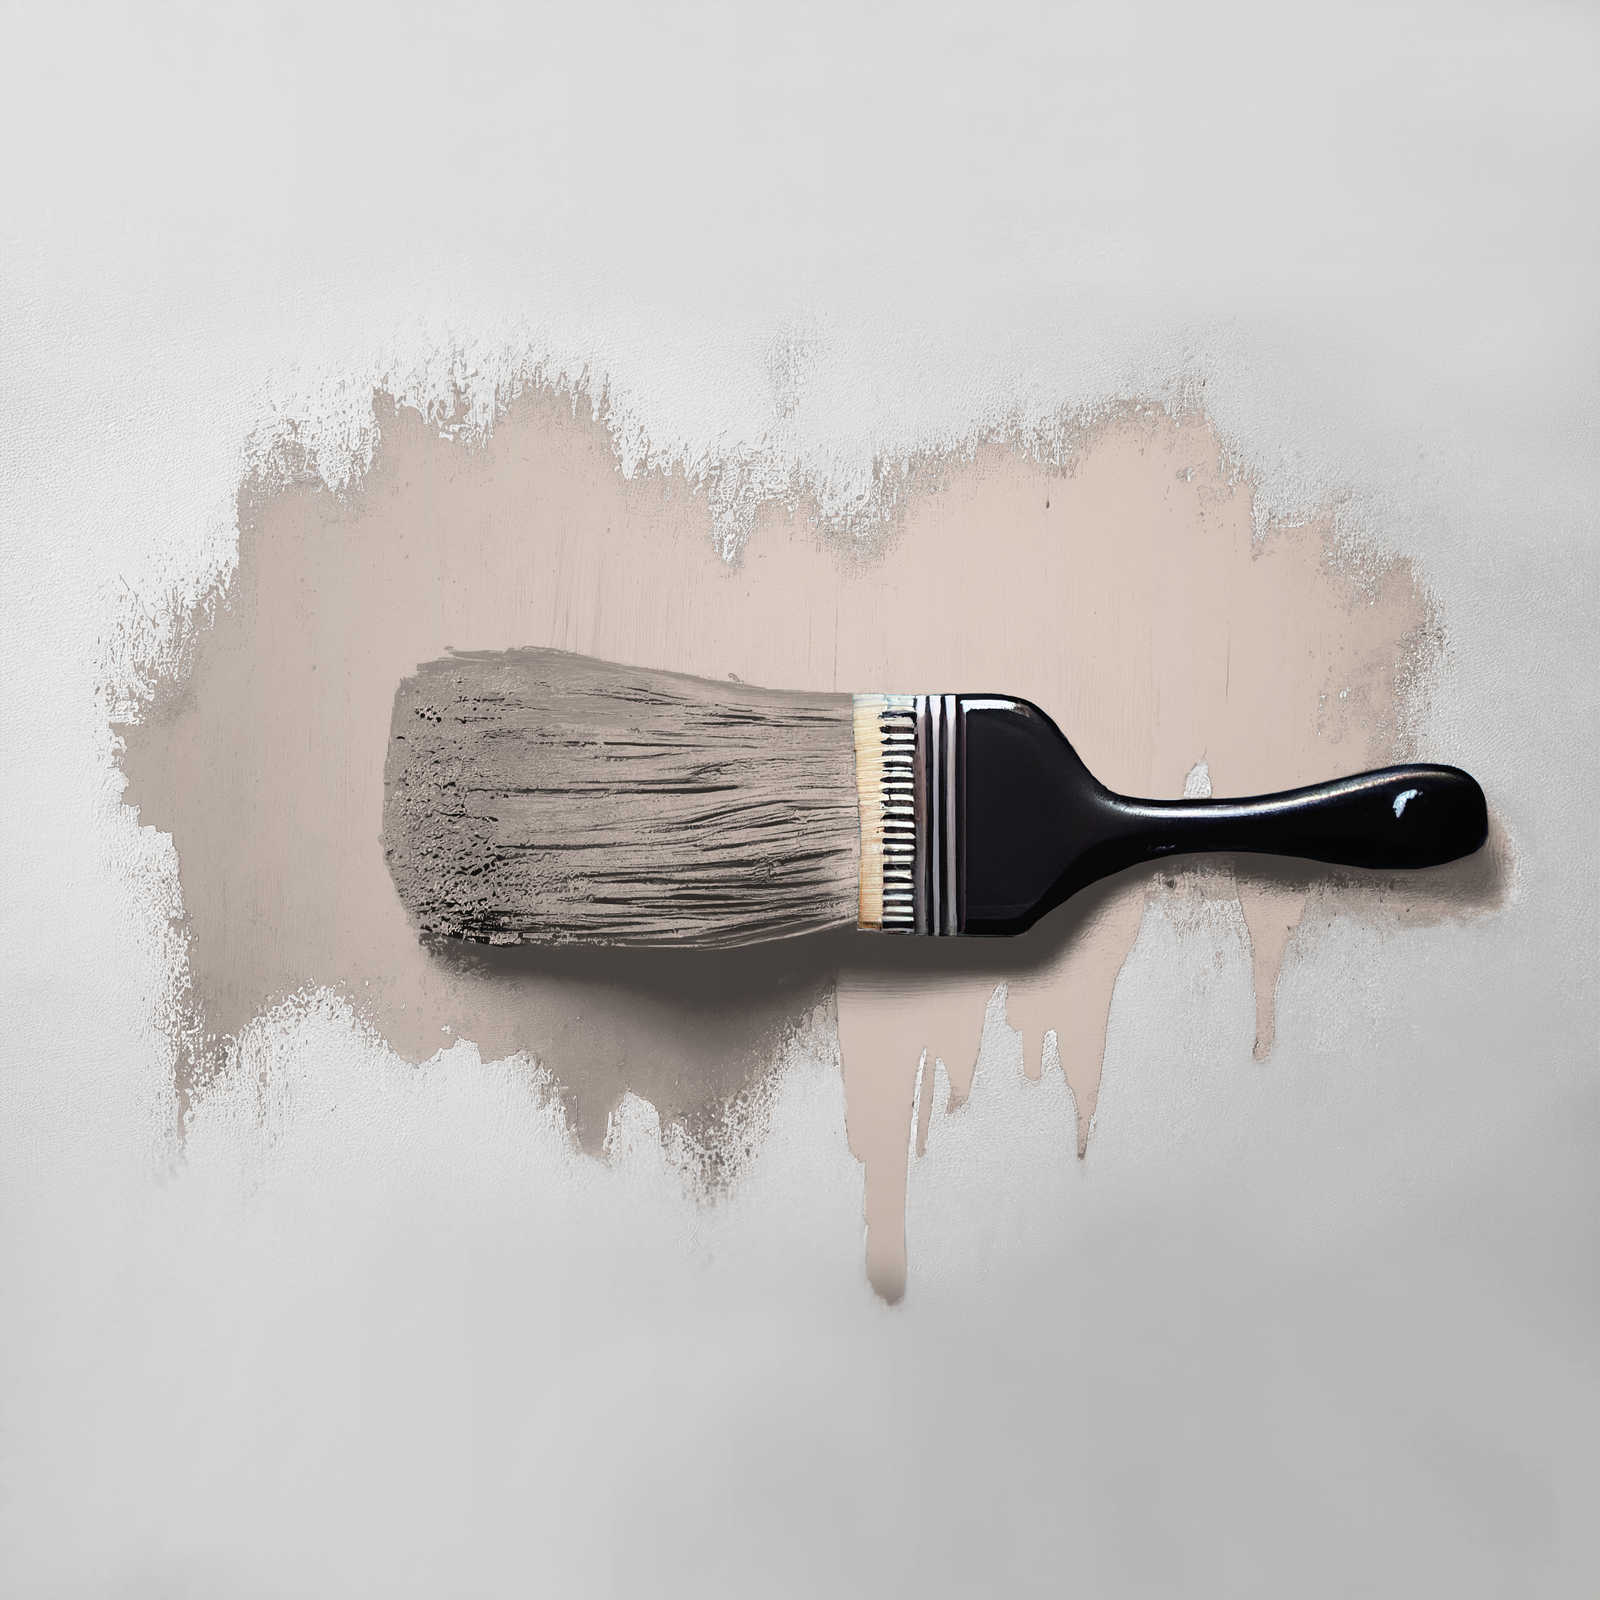             Peinture murale TCK6017 »Chilled Chai Latte« en gris tendre – 5,0 litres
        